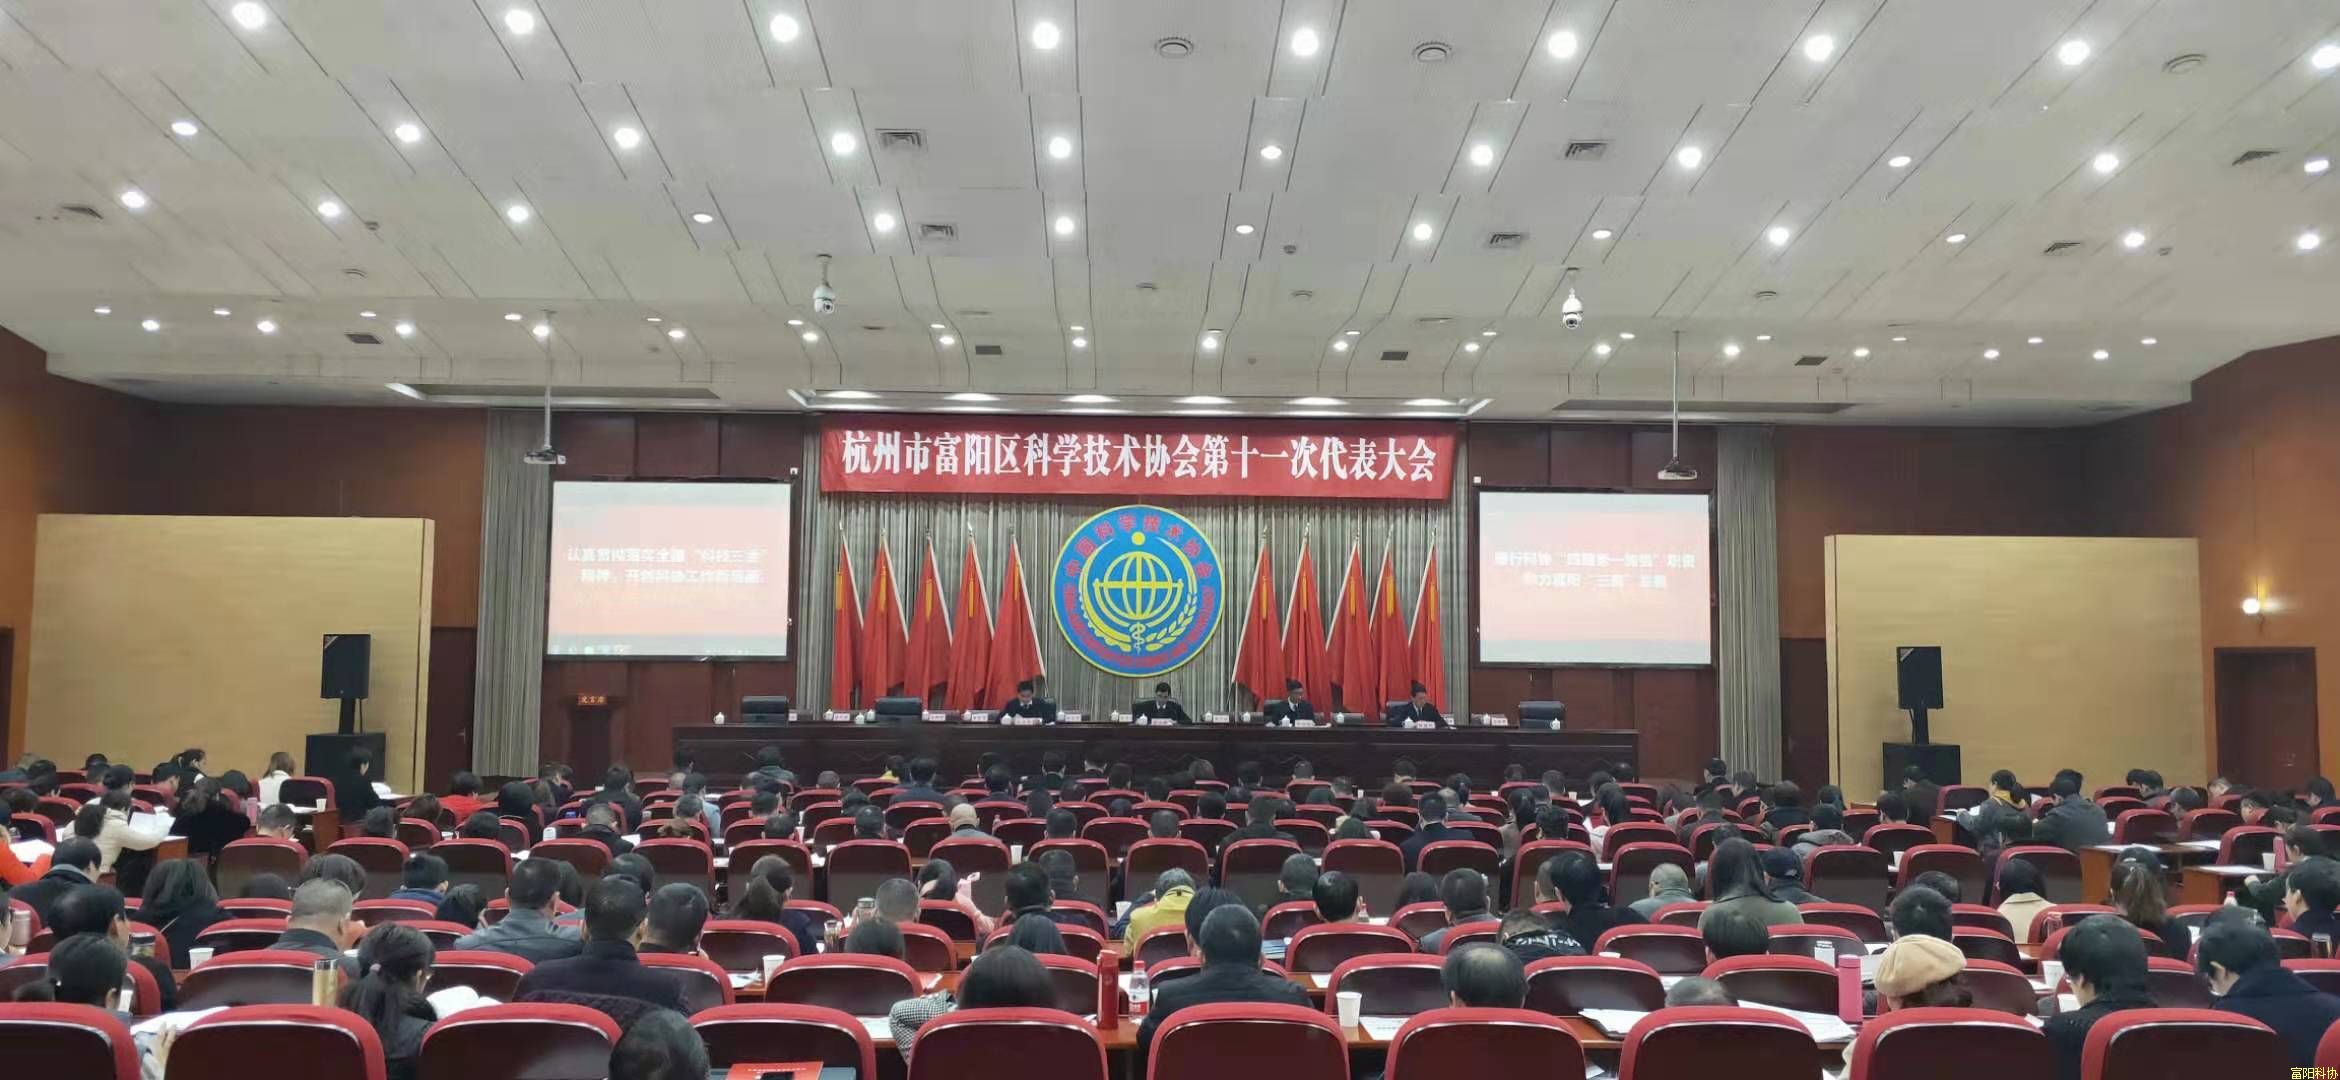 热烈祝贺杭州市富阳区科学技术协会第十一次代表大会顺利召开